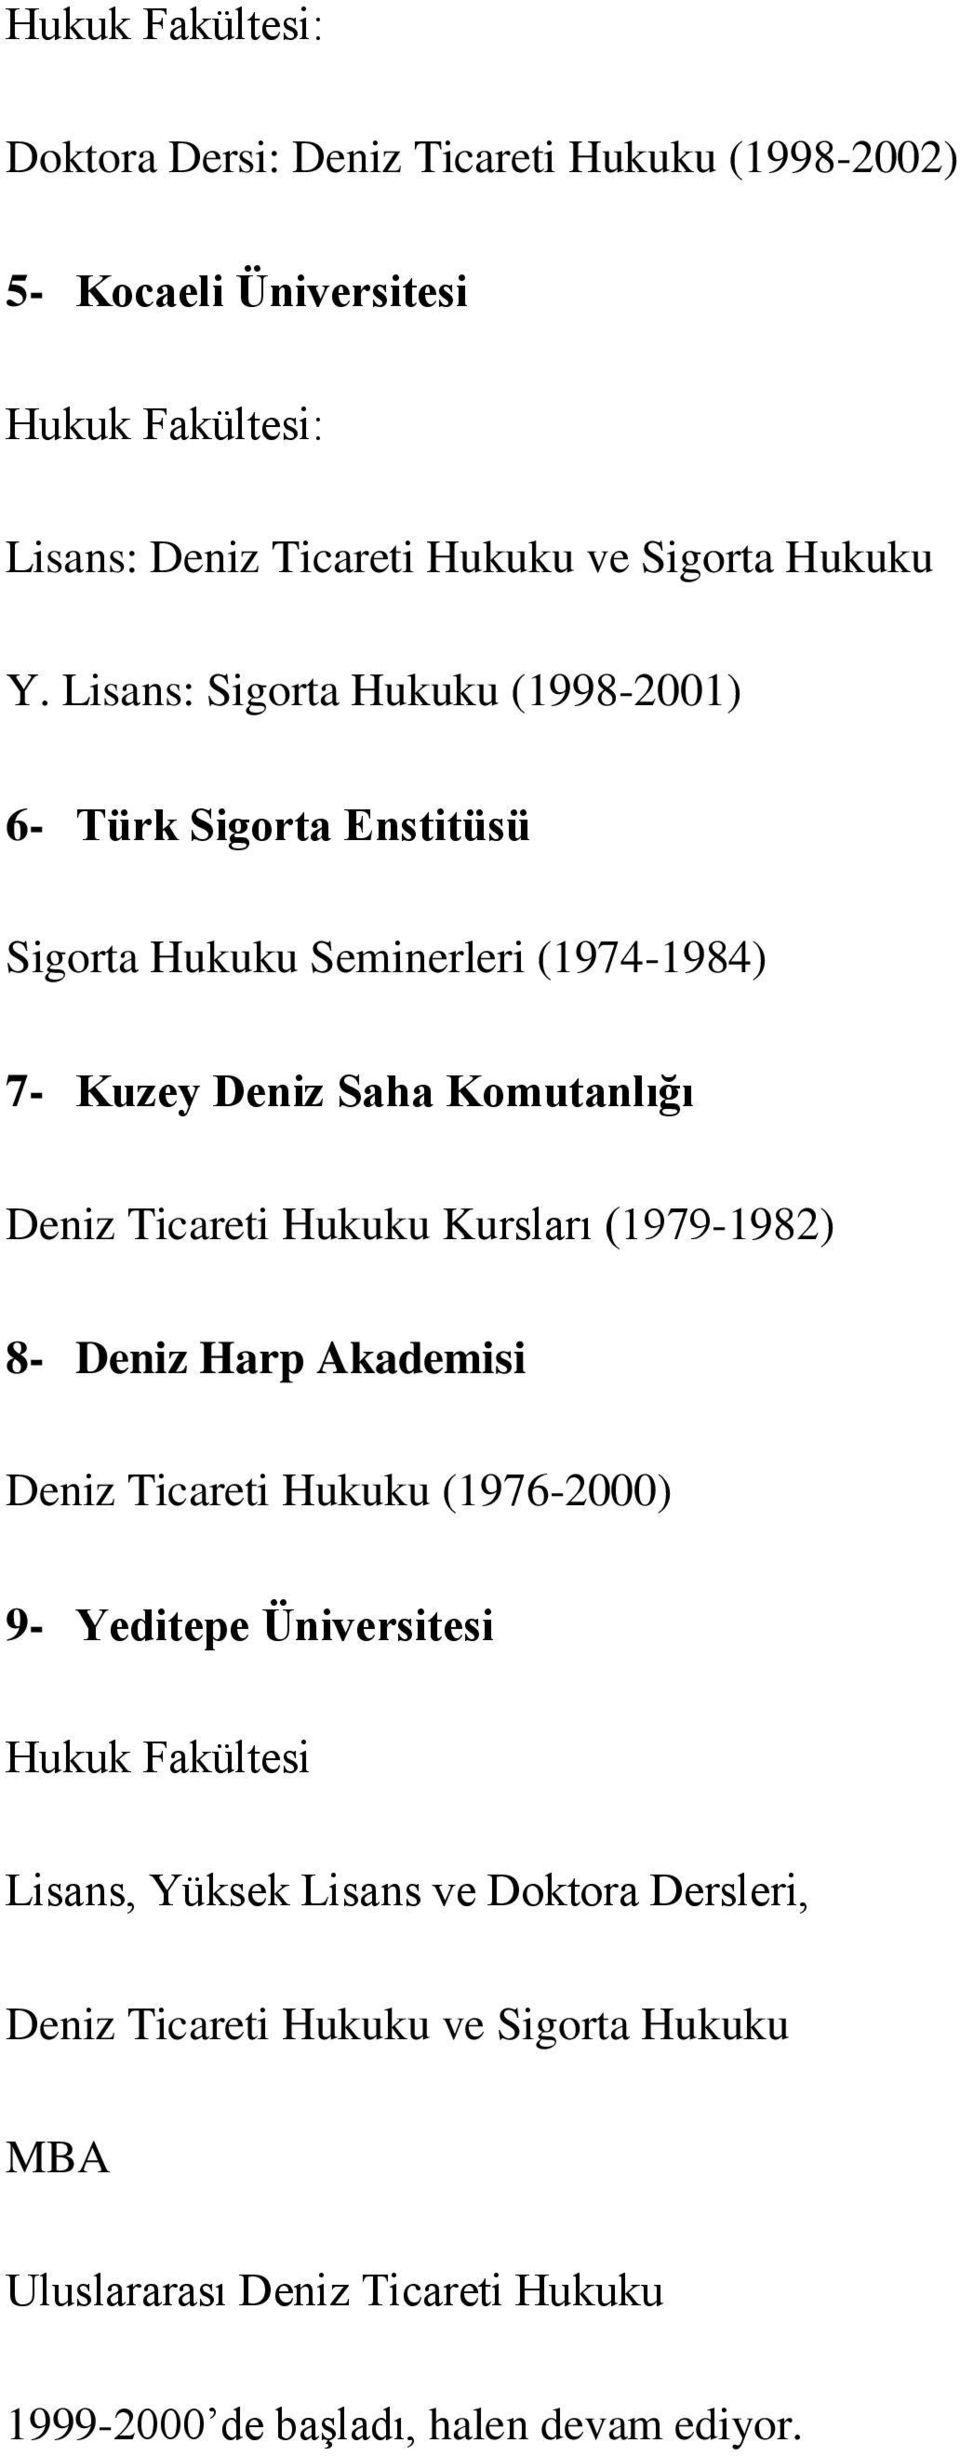 Lisans: Sigorta Hukuku (1998-2001) 6- Türk Sigorta Enstitüsü Sigorta Hukuku Seminerleri (1974-1984) 7- Kuzey Deniz Saha Komutanlığı Deniz Ticareti